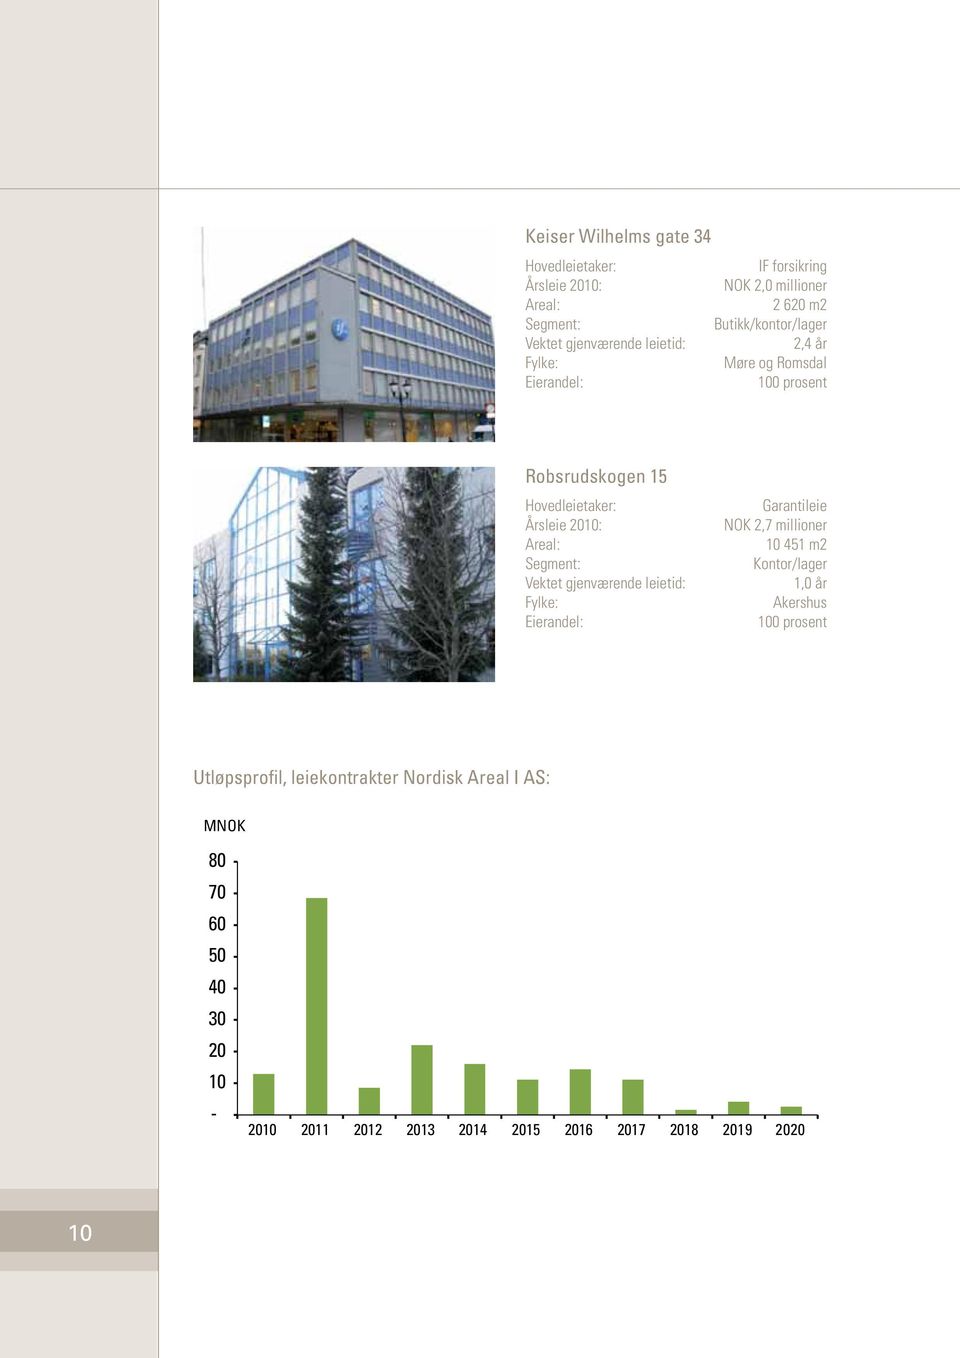 Segment: Vektet gjenværende leietid: Fylke: Eierandel: Garantileie NOK 2,7 millioner 10 451 m2 Kontor/lager 1,0 år Akershus 100